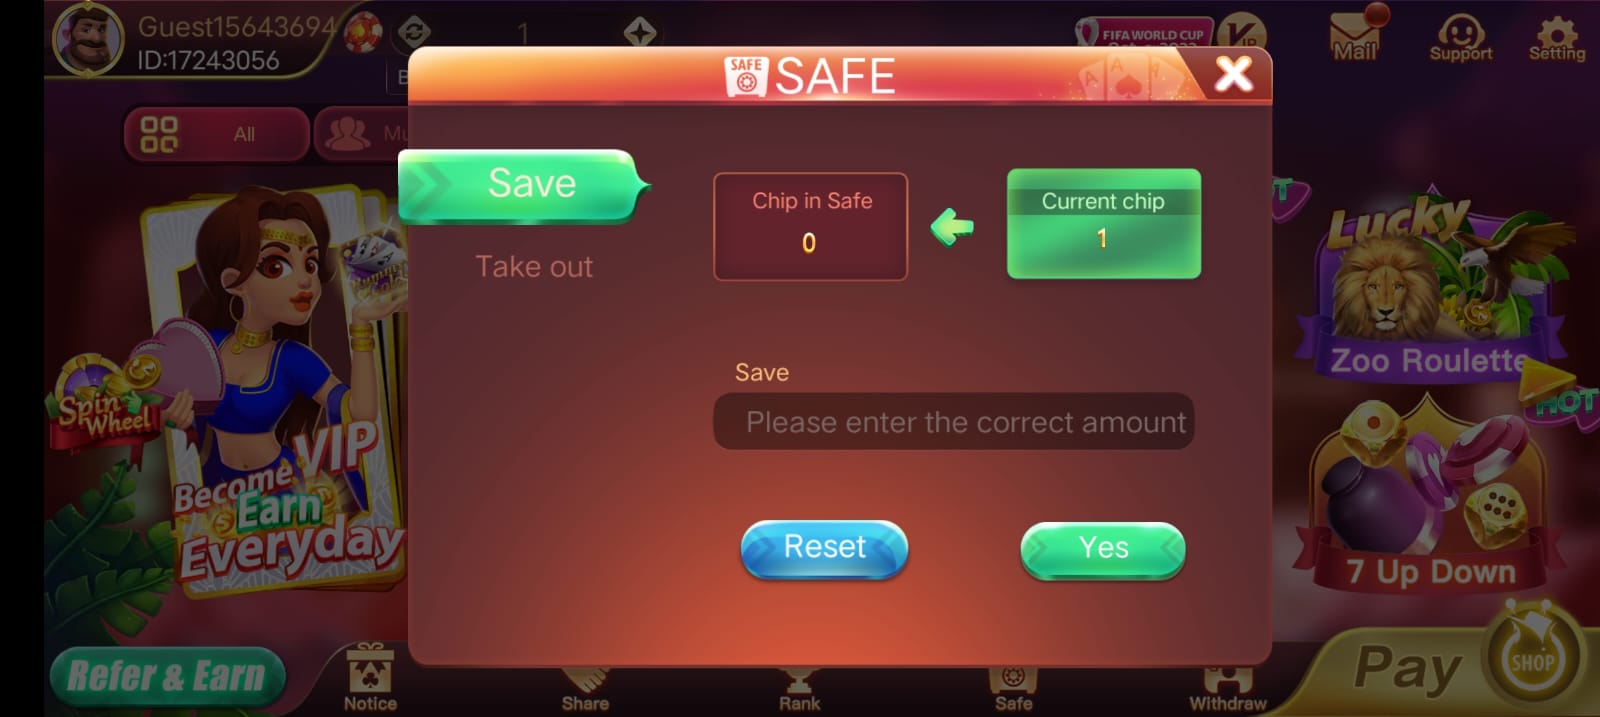 Safe Button Program In "Rummy Posh App"